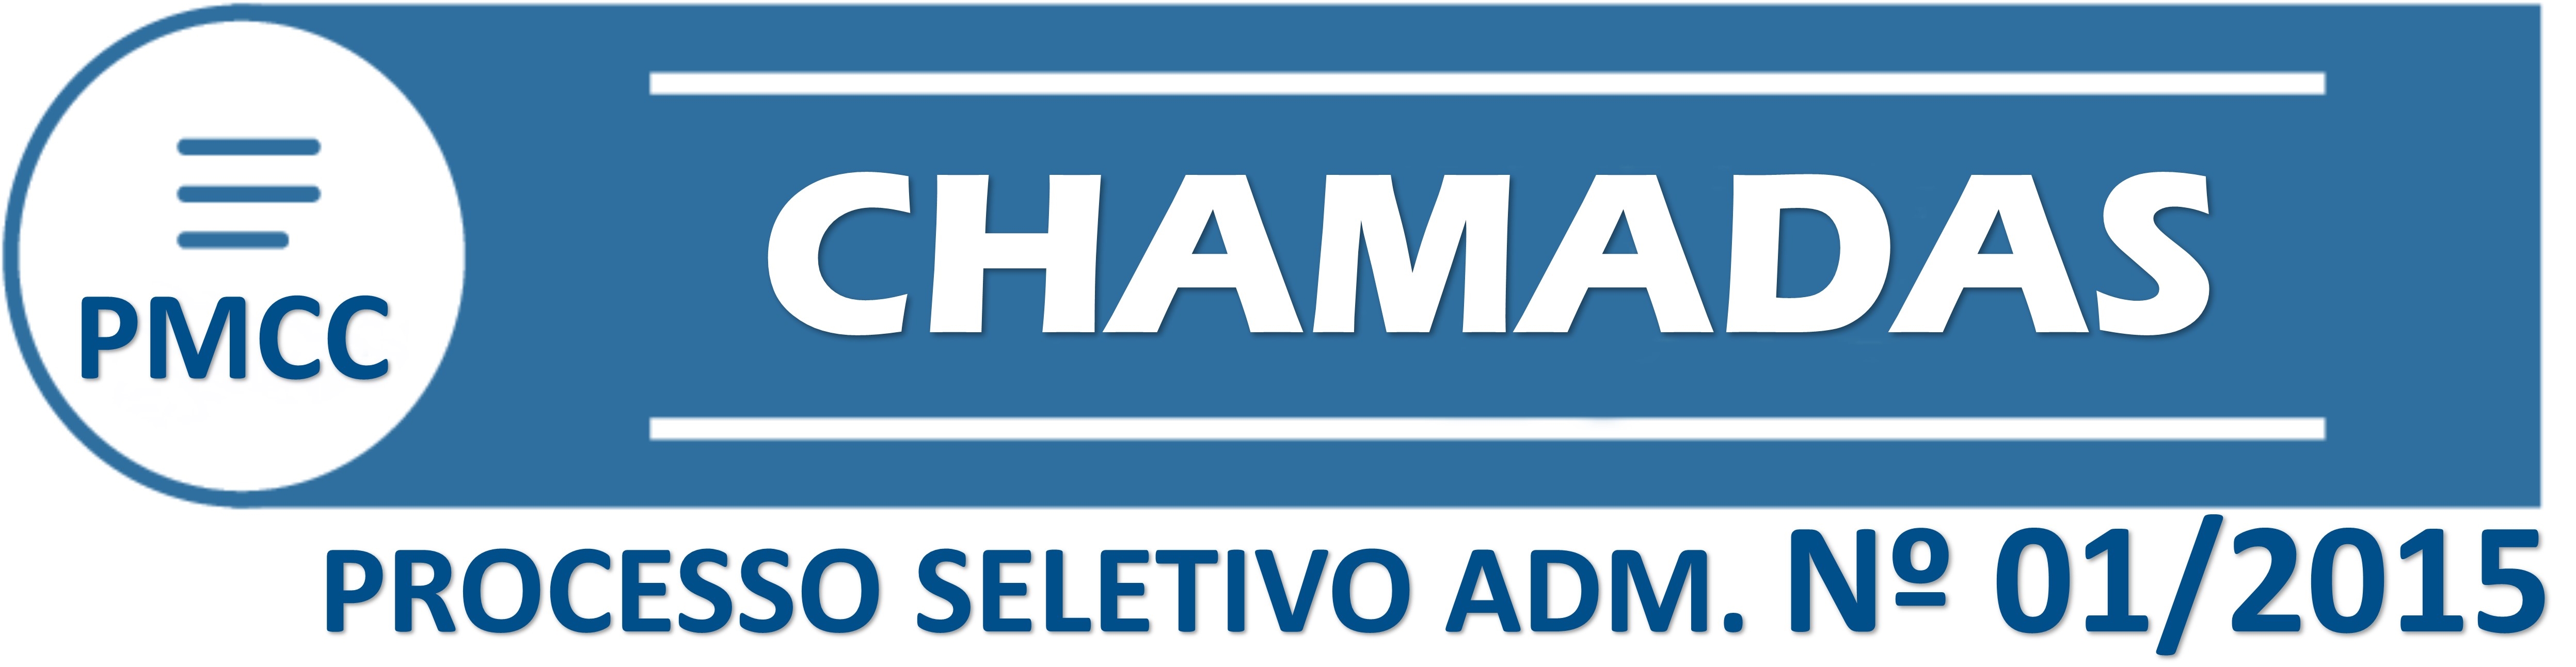 Prefeitura realiza convocação de candidata do processo seletivo n°001/2015 para o cargo de Assistente Social